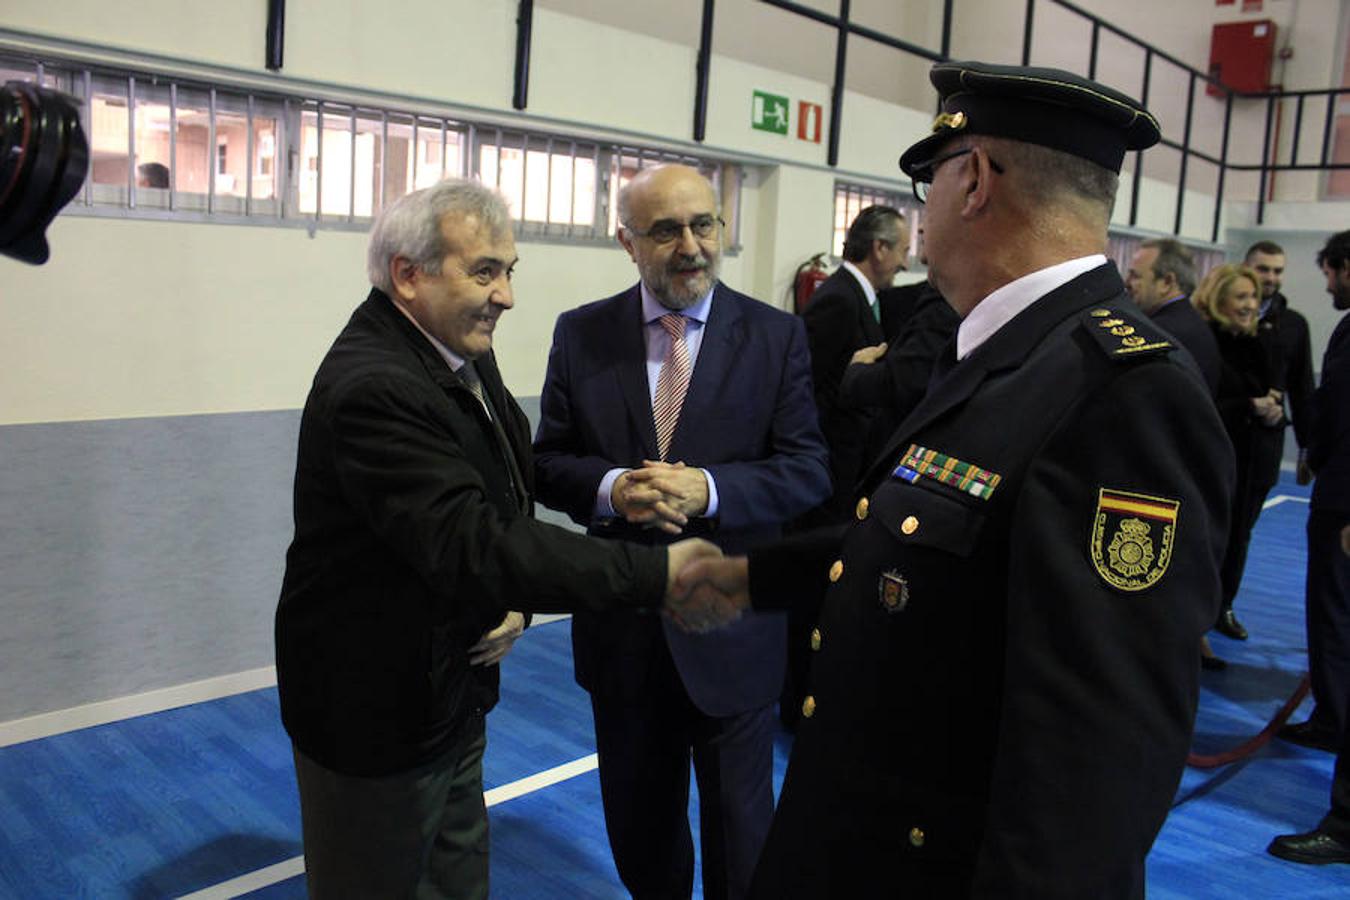 El acto de la toma de posesión de Ángel Alcázar Sempere como jefe provincial de la Policía en Toledo